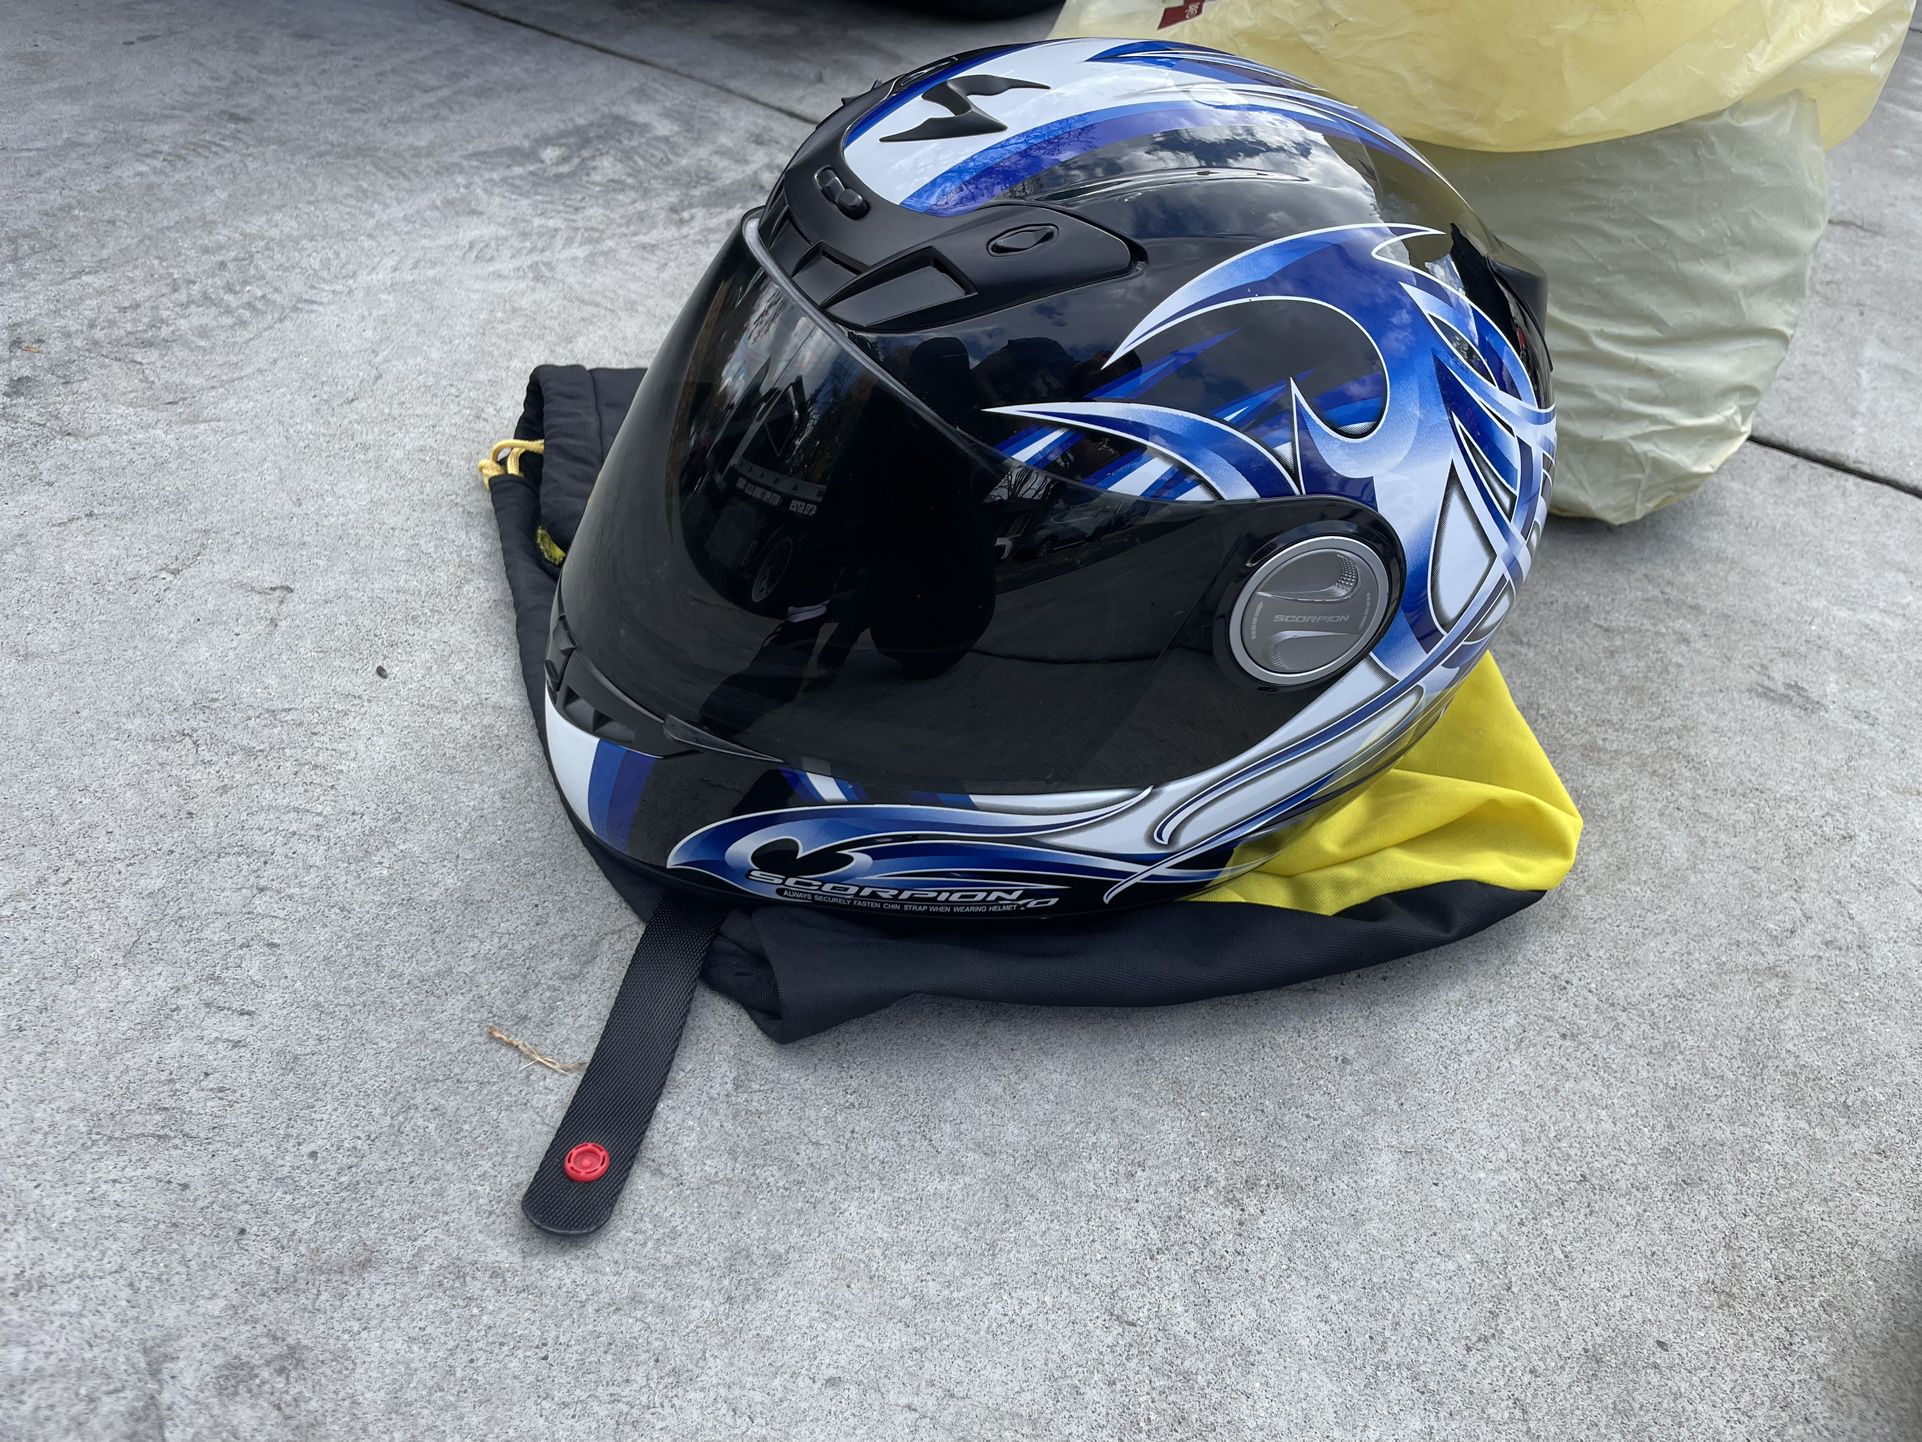 Motorcycle Jacket Pants Helmet 